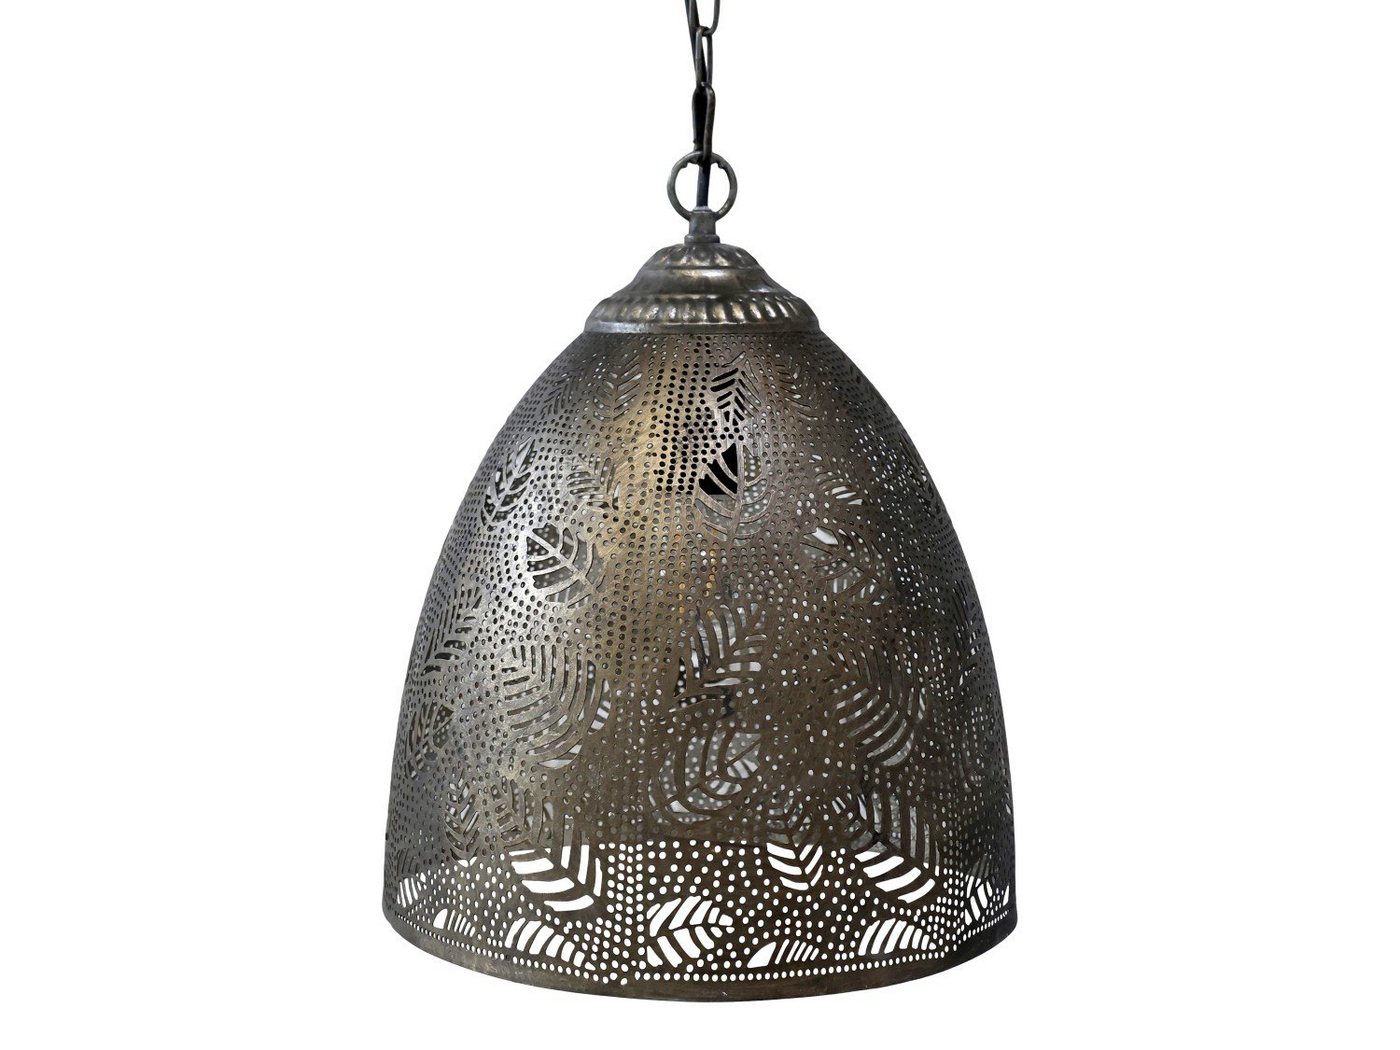 AURUM Hängeleuchte Chic Antique Vire Lampe mit Muster H36/D30 cm antique bronze von AURUM